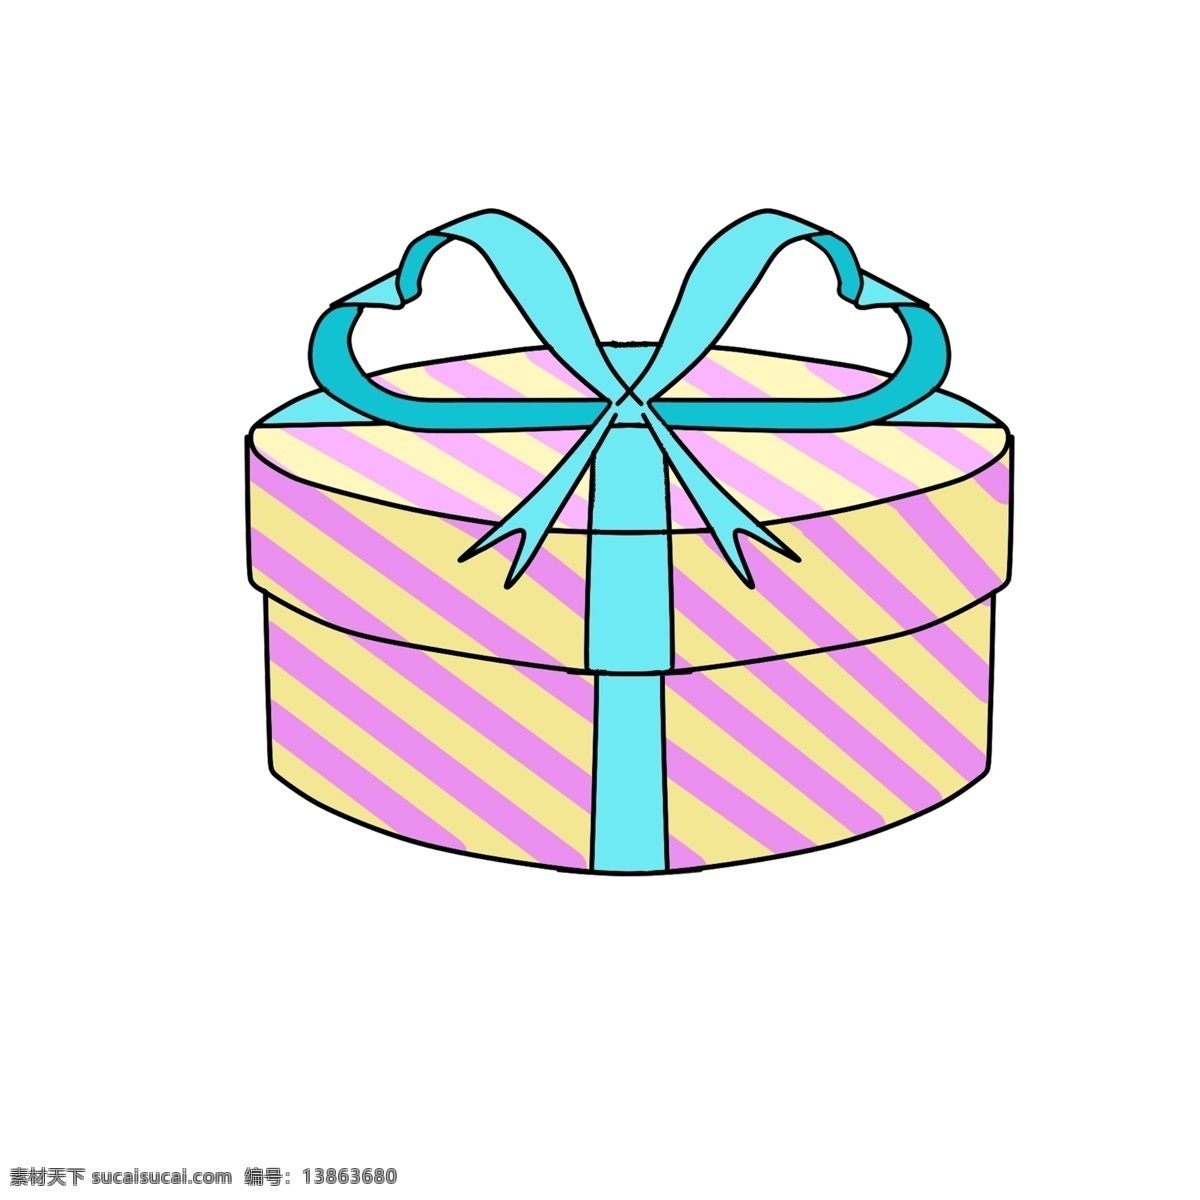 卡通 手绘 蛋糕 盒子 卡通礼物 礼物 礼物盒 蛋糕盒子 彩色盒子 蝴蝶结 蓝色蝴蝶结